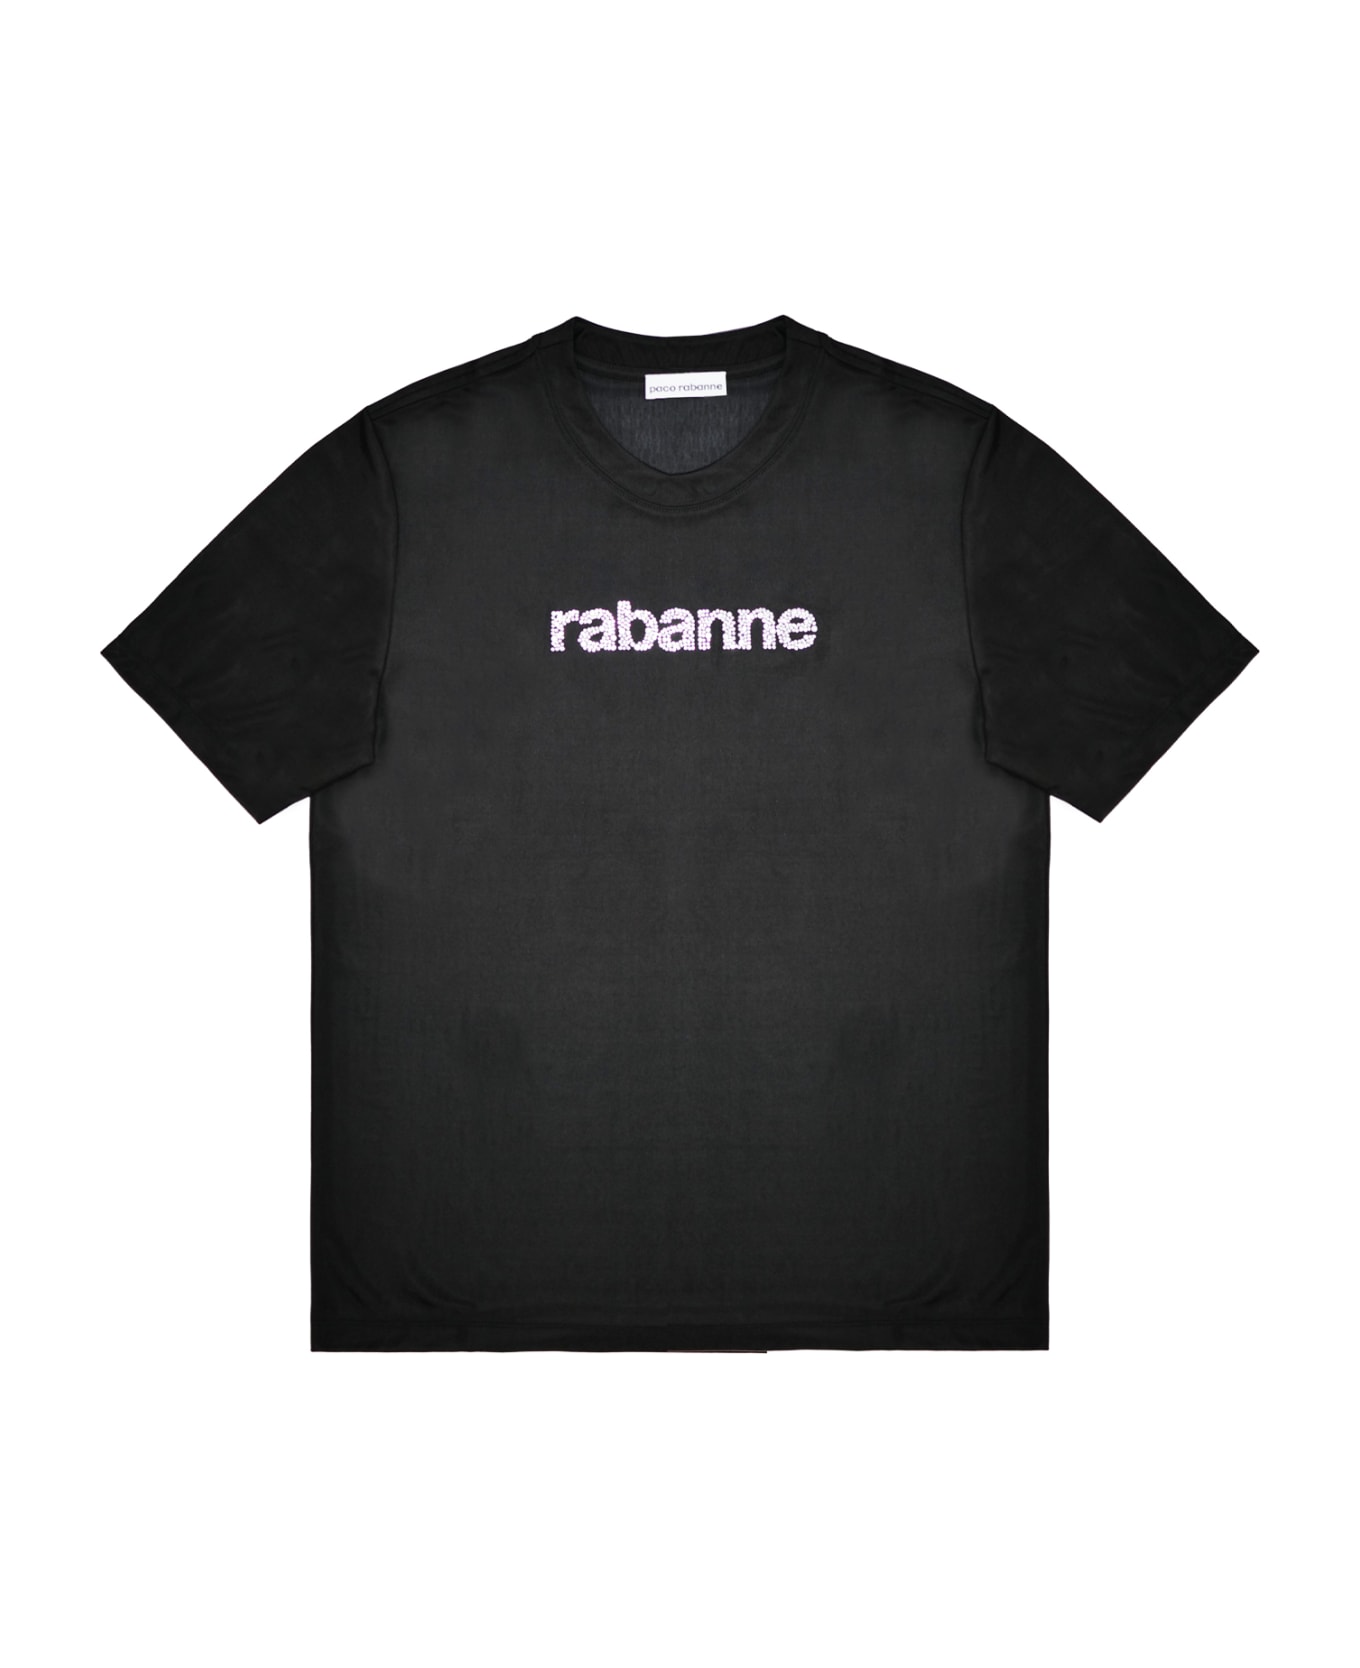 Paco Rabanne T-shirt - Black Tシャツ